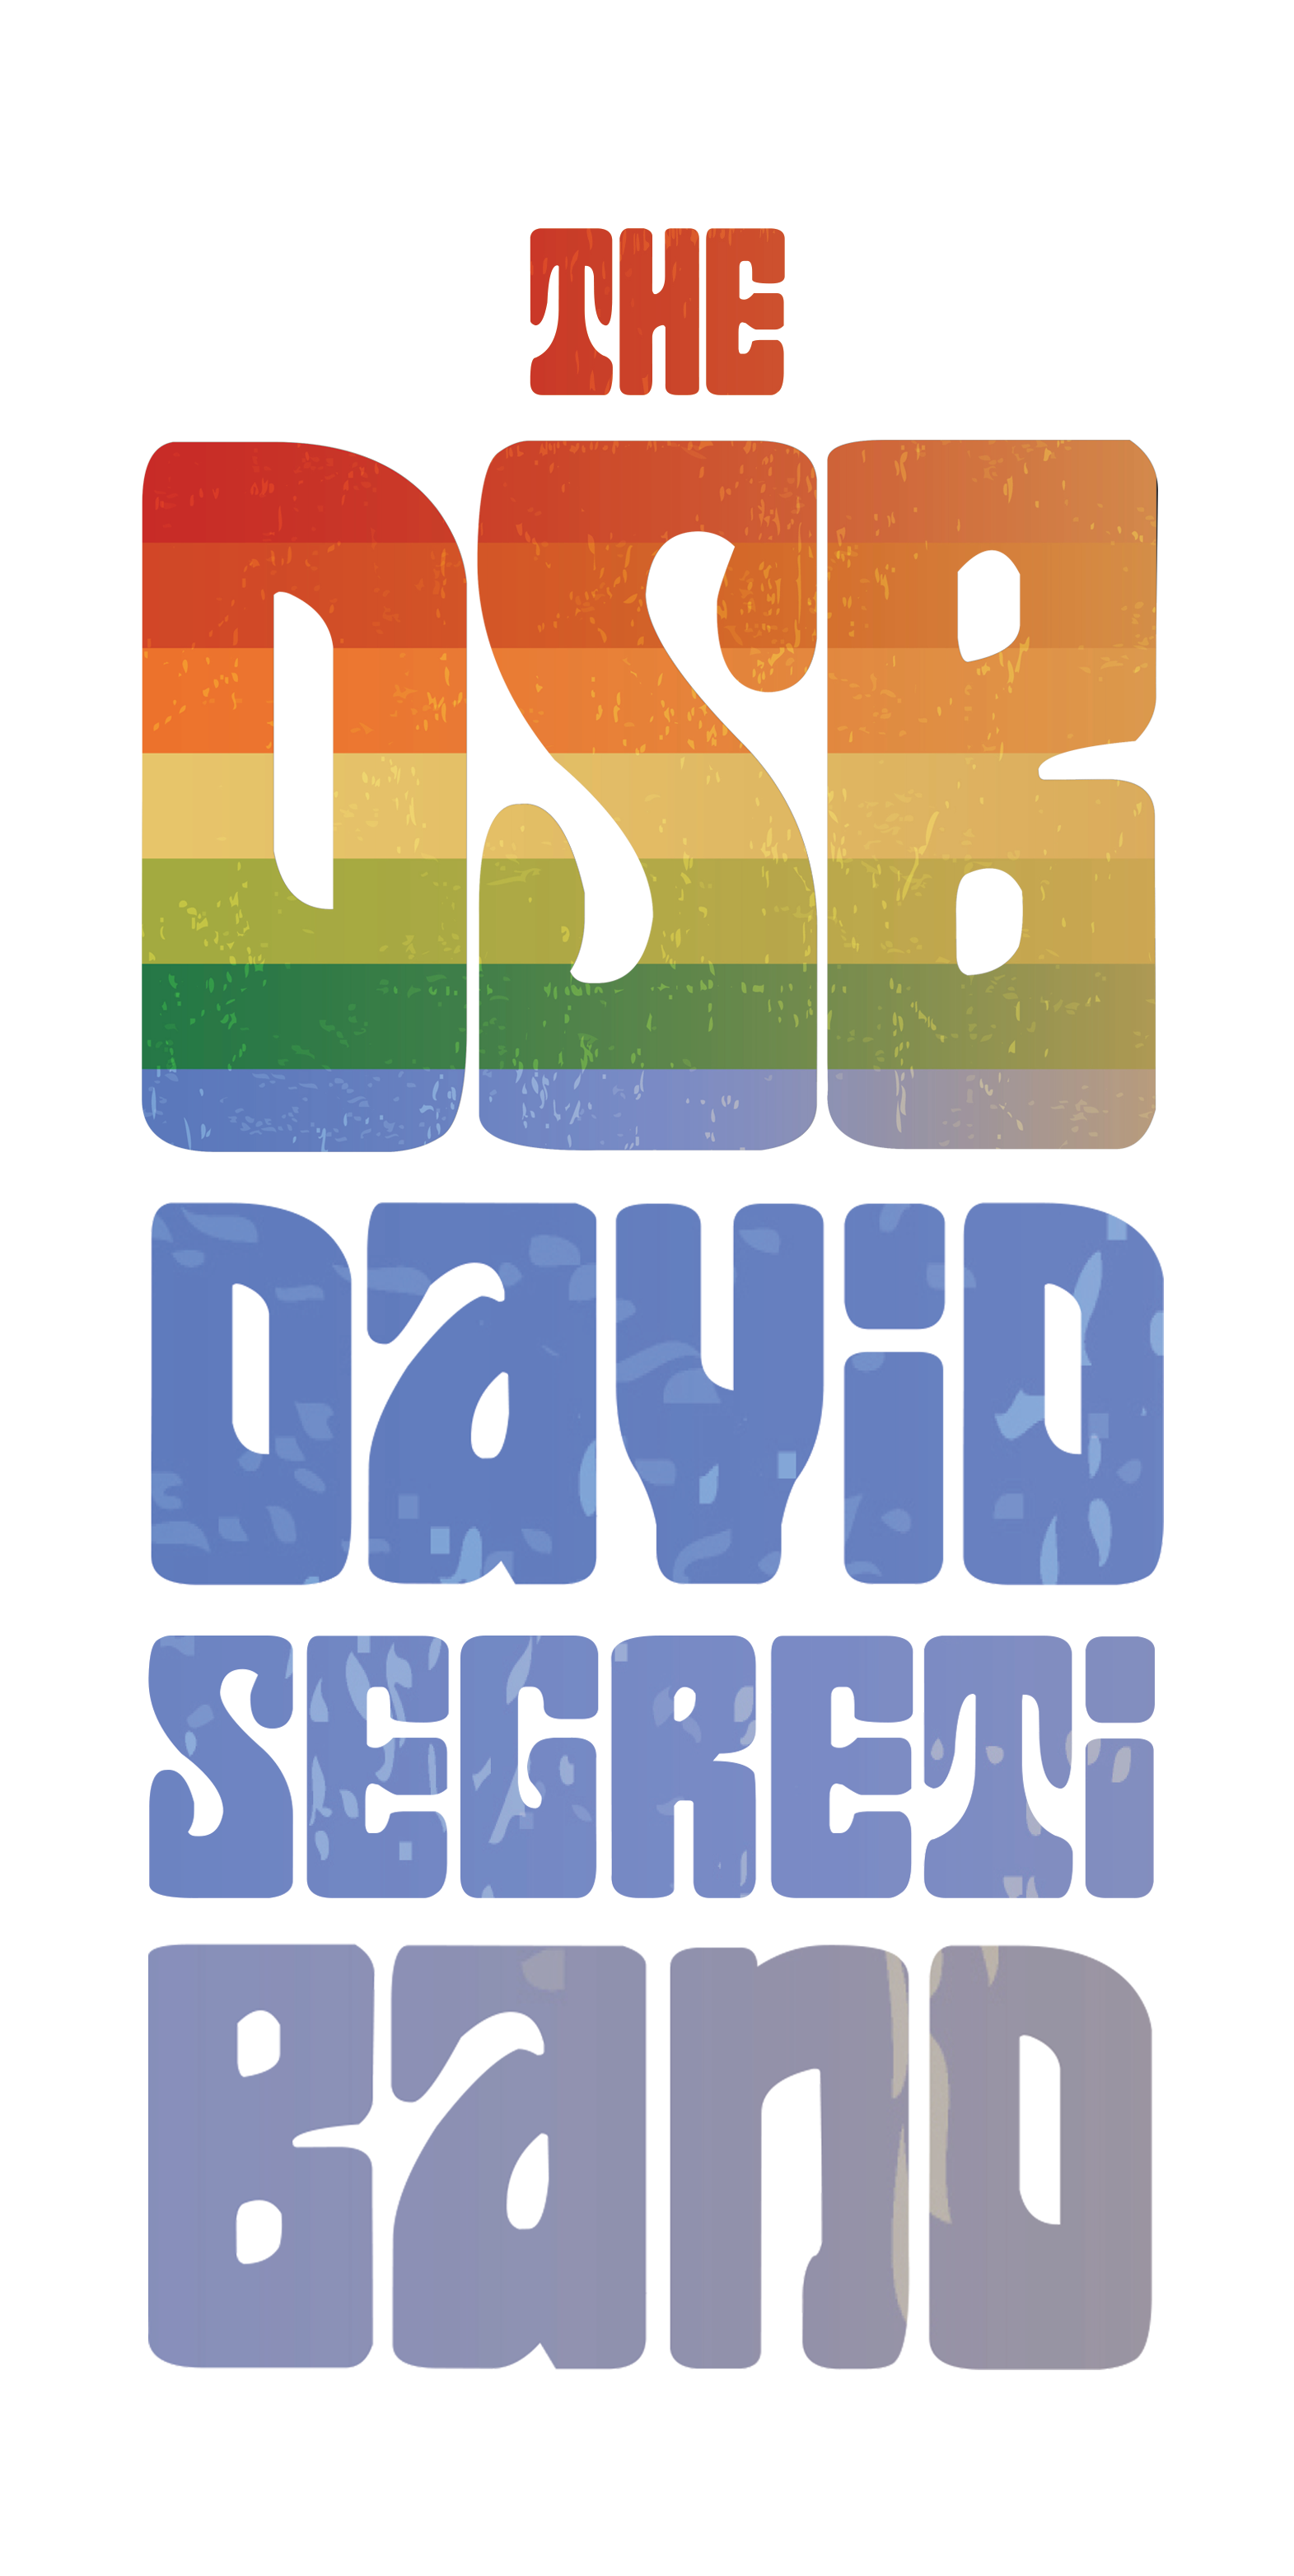 The David Segreti Band